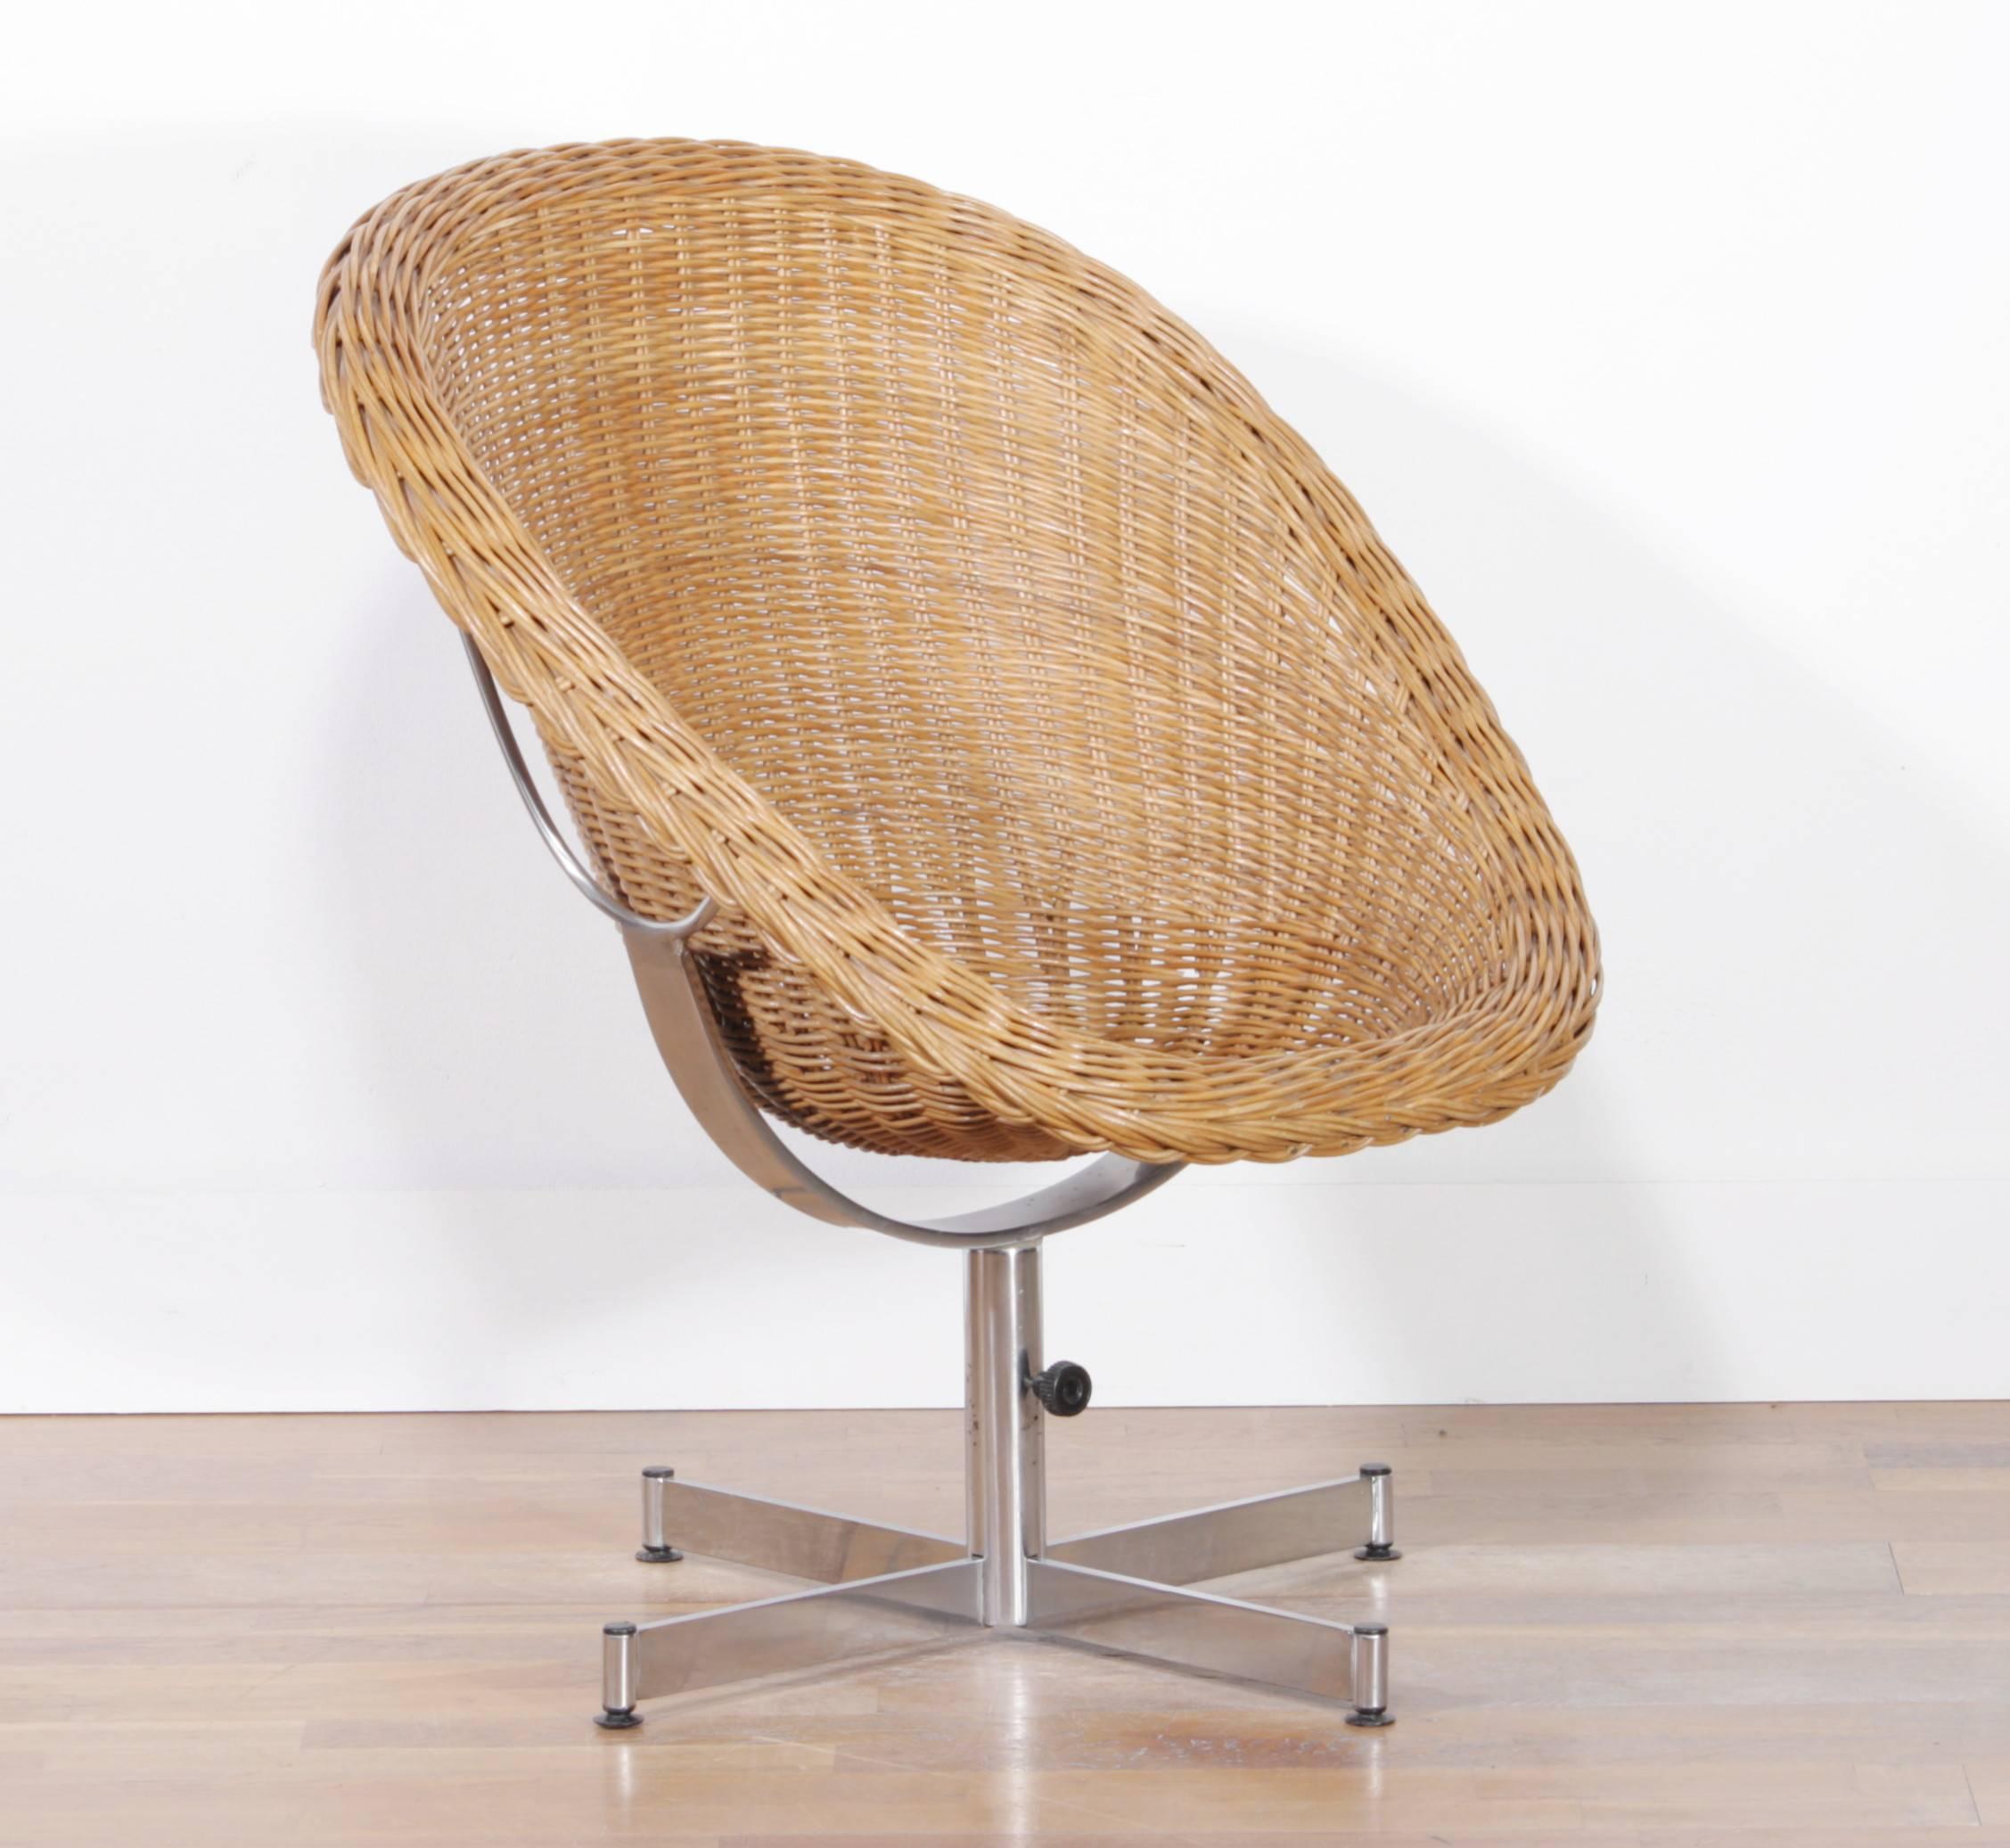 Dutch 1950s, Rattan Chair by Dirk Van Sliedrecht